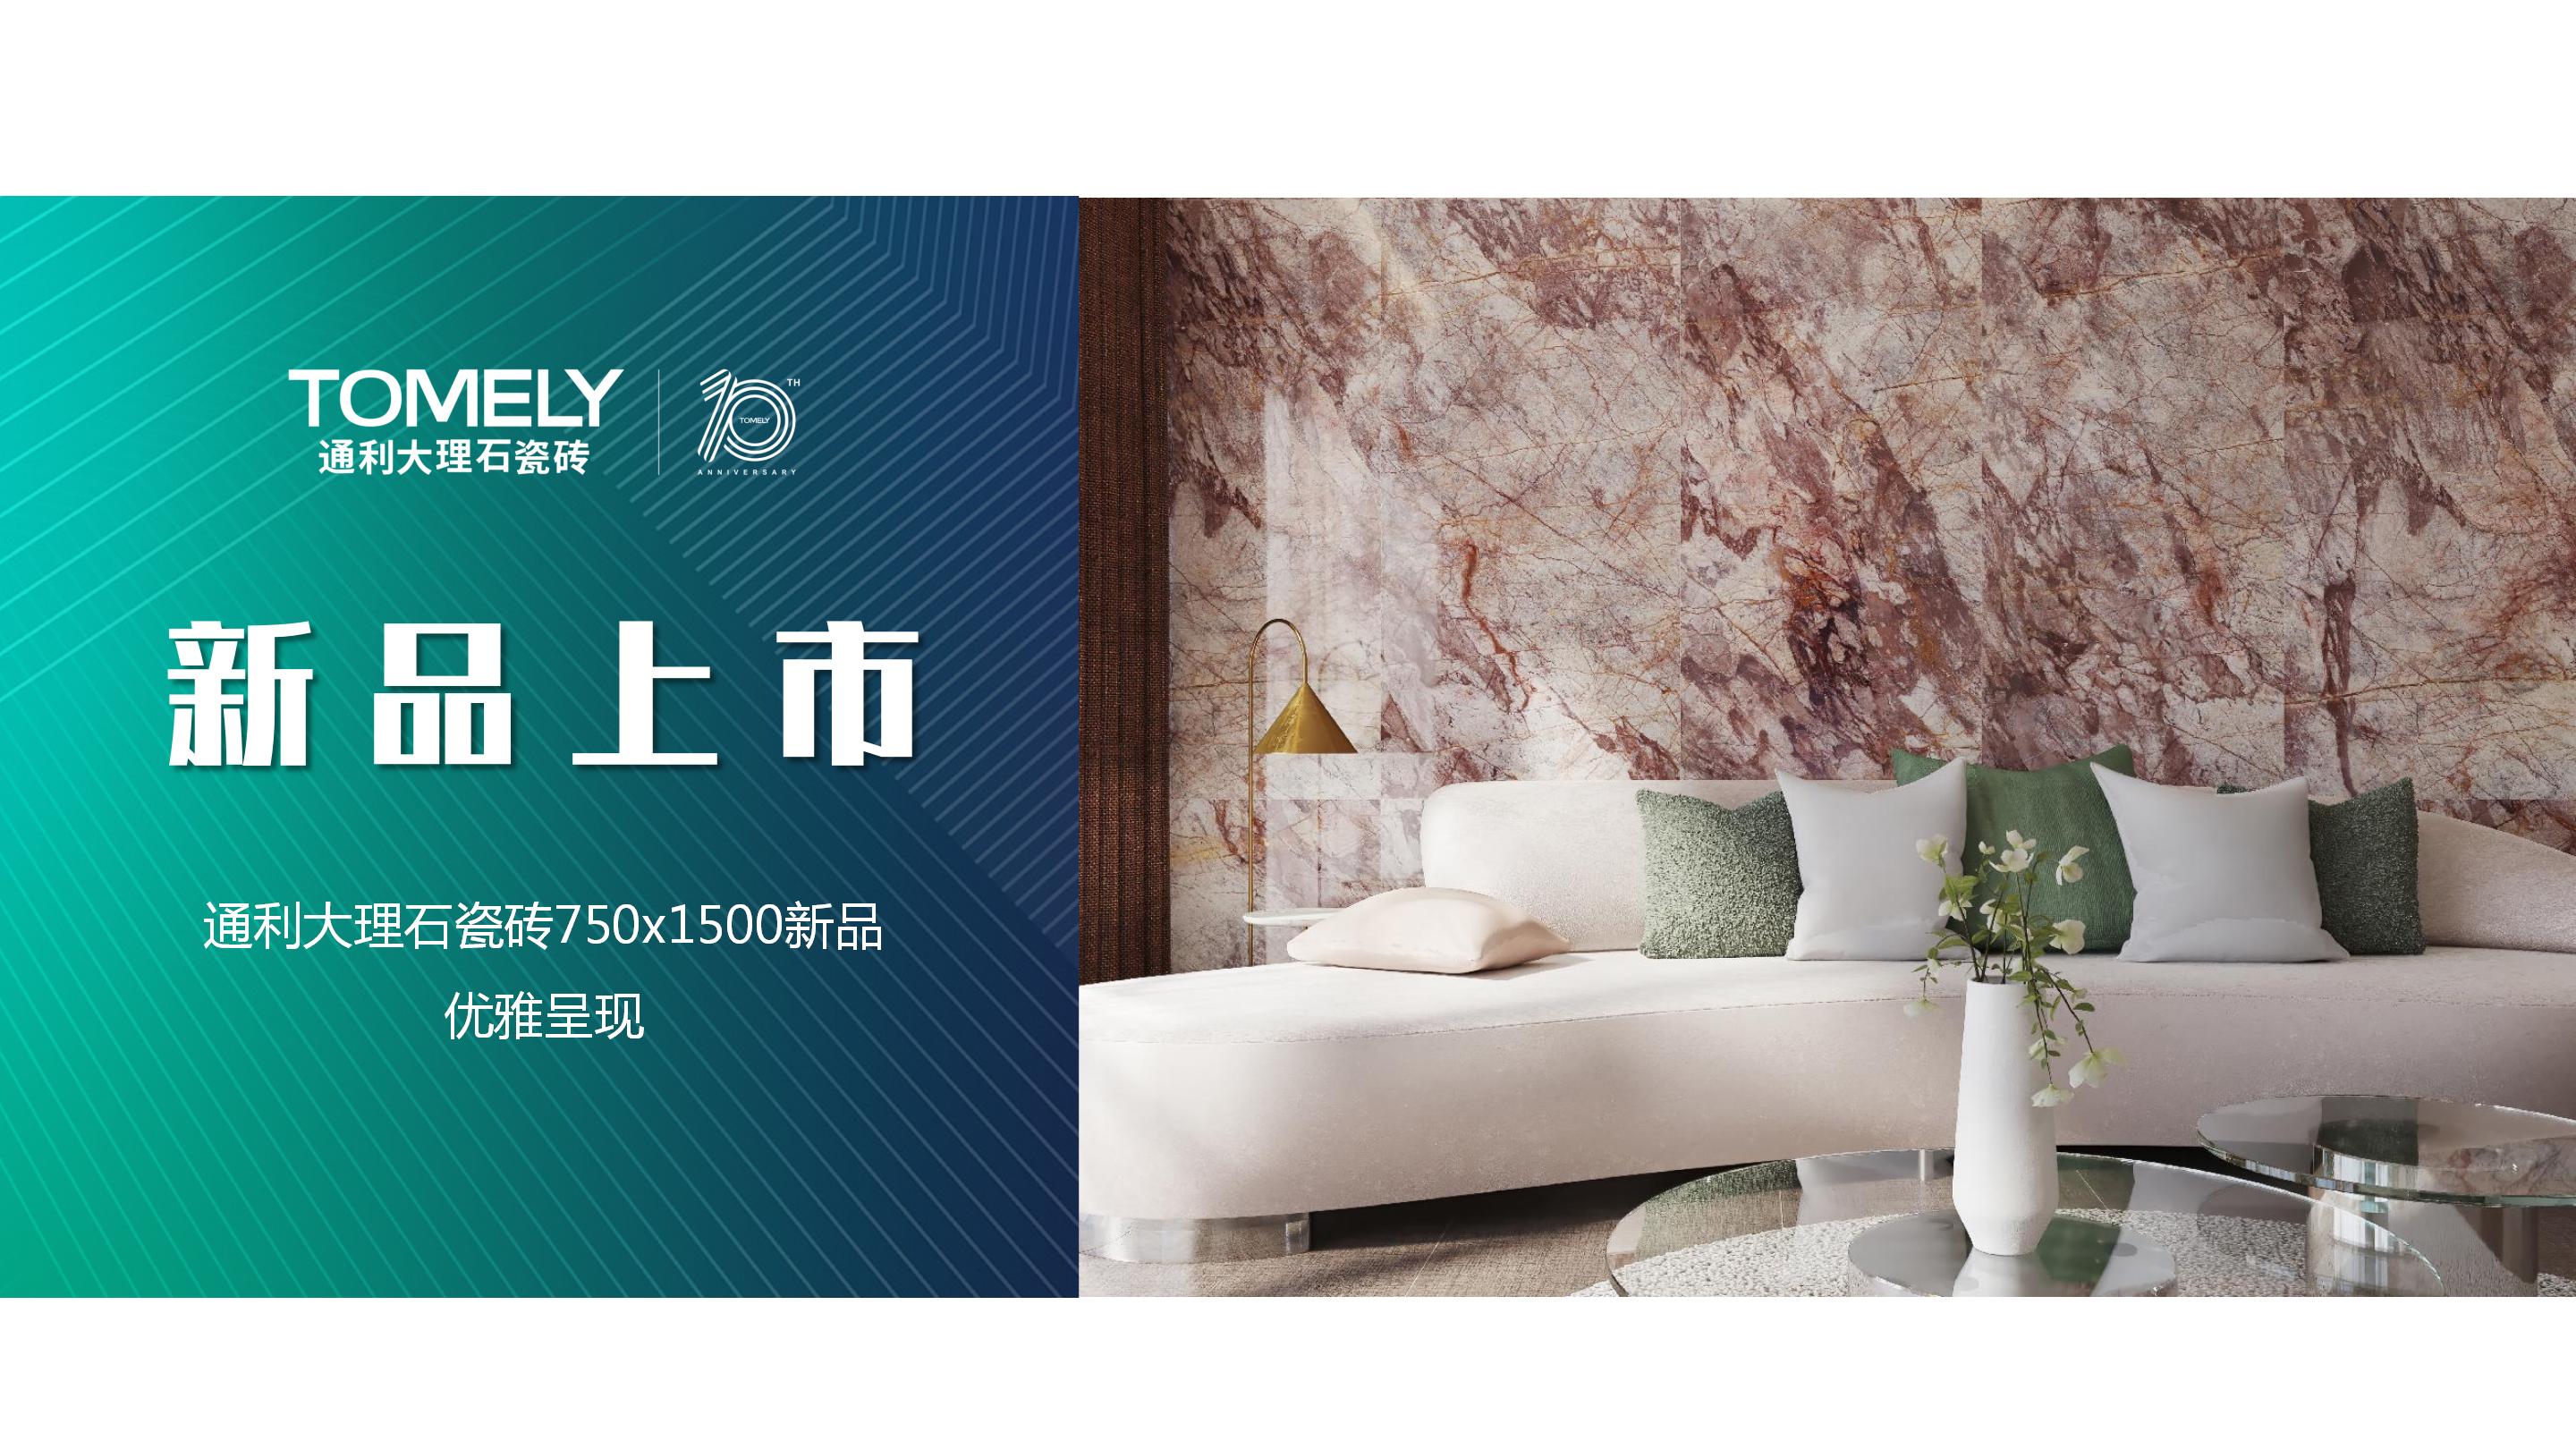 新品上市丨通利大理石瓷砖750x1500新品魅力呈现(上)